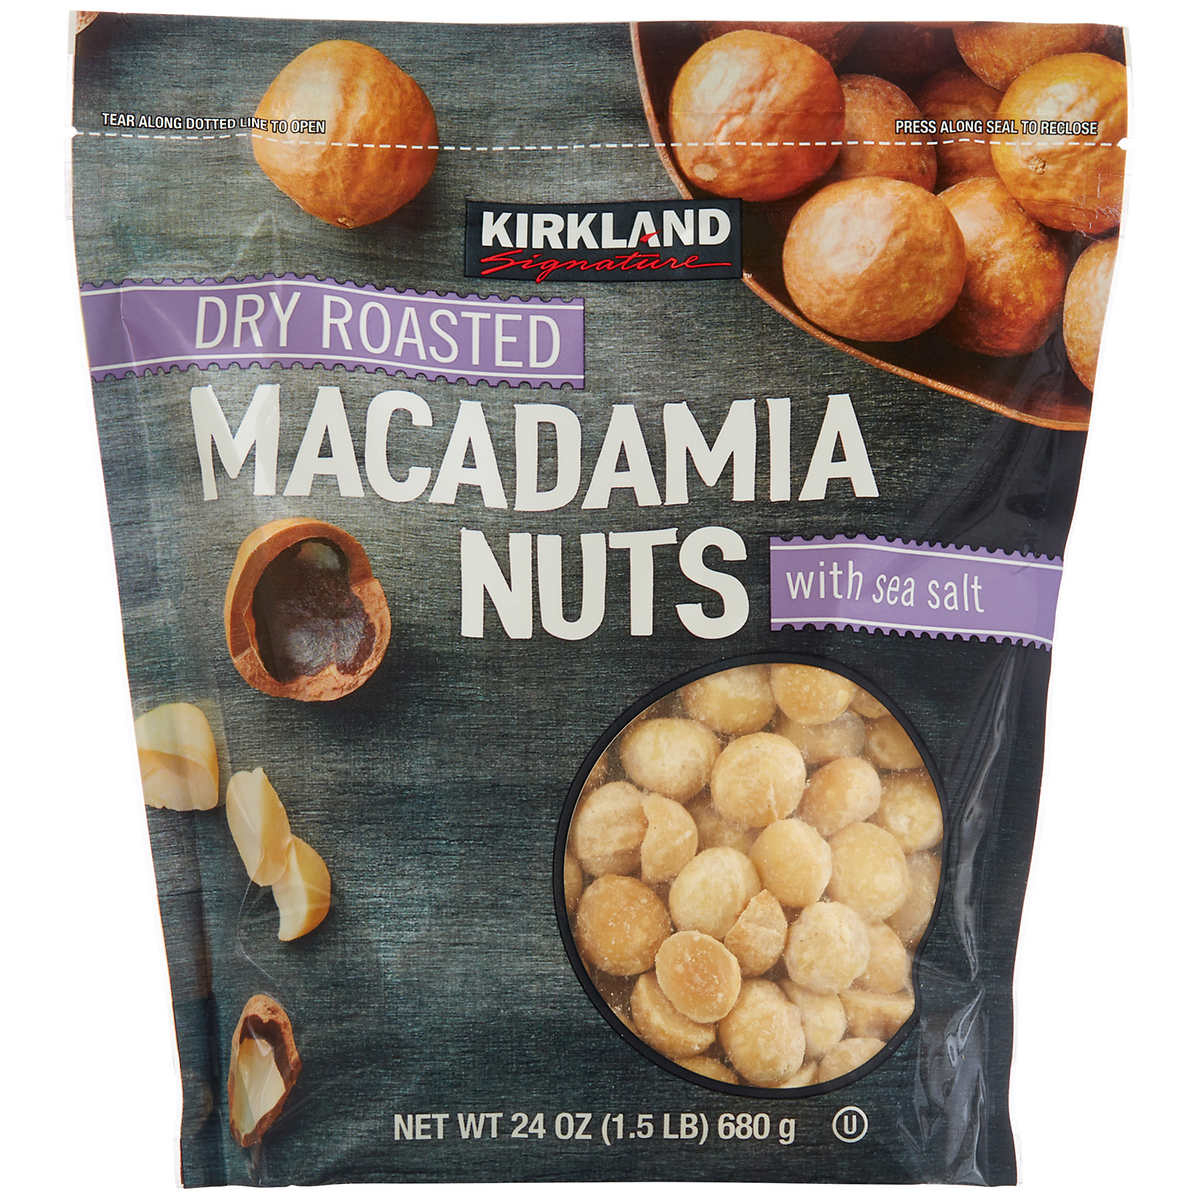 Kirkland Signature Dry Roasted Macadamia Nuts, 24 Oz.